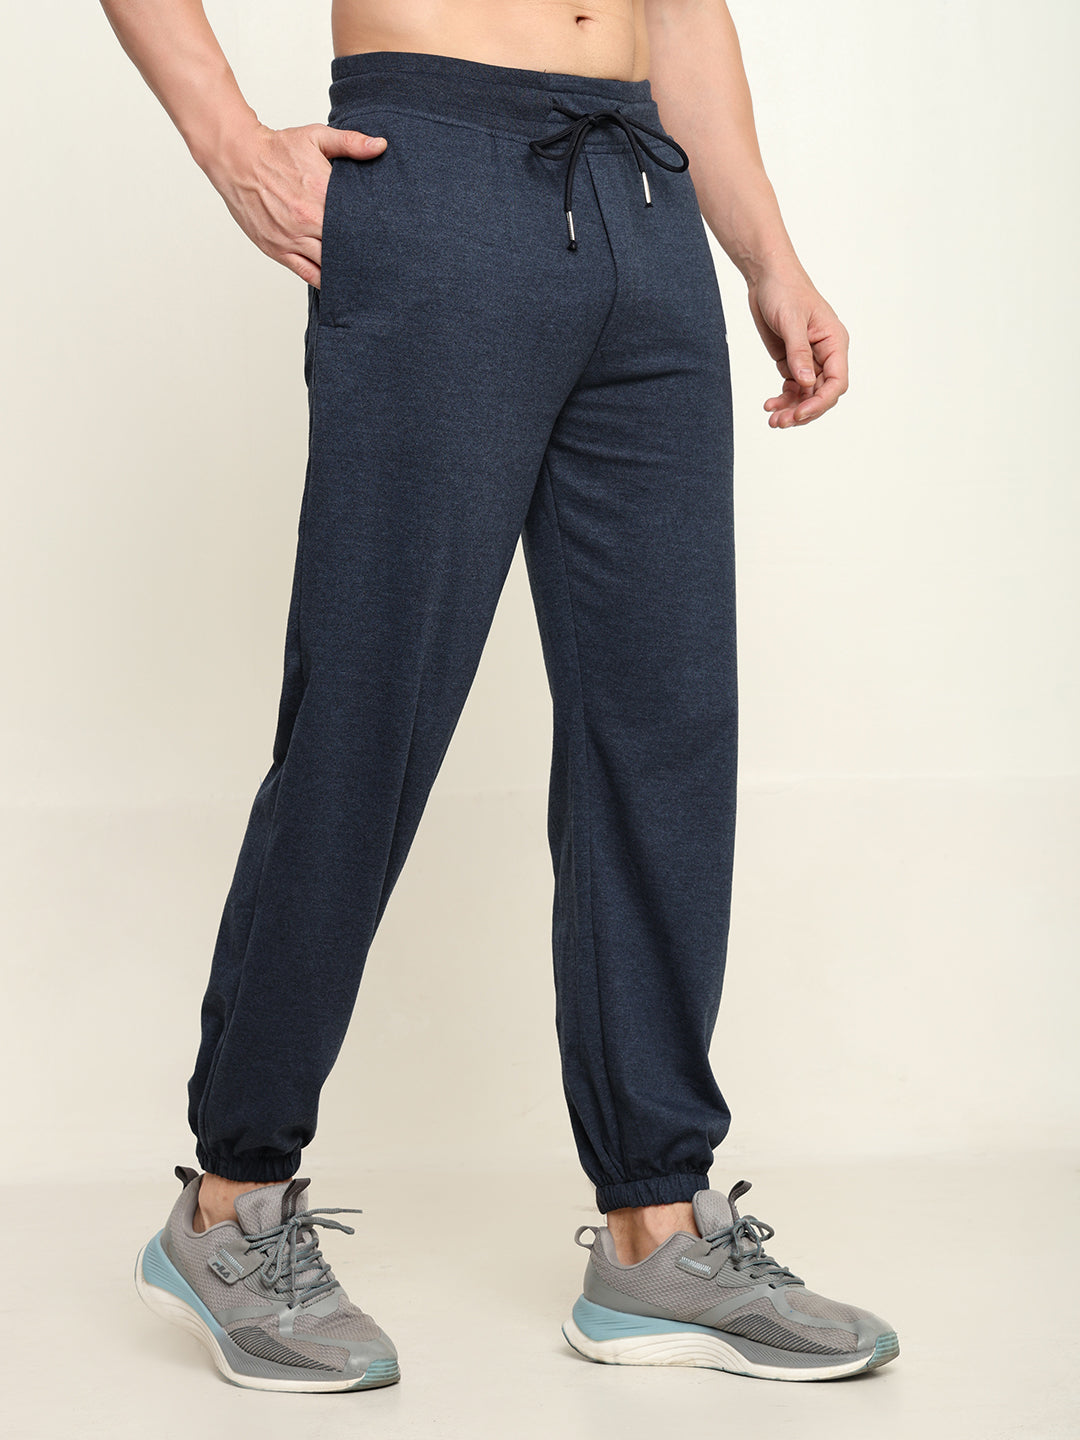 Breathable Loose Fit Cotton Track Pant for Men.(Melange Blue)